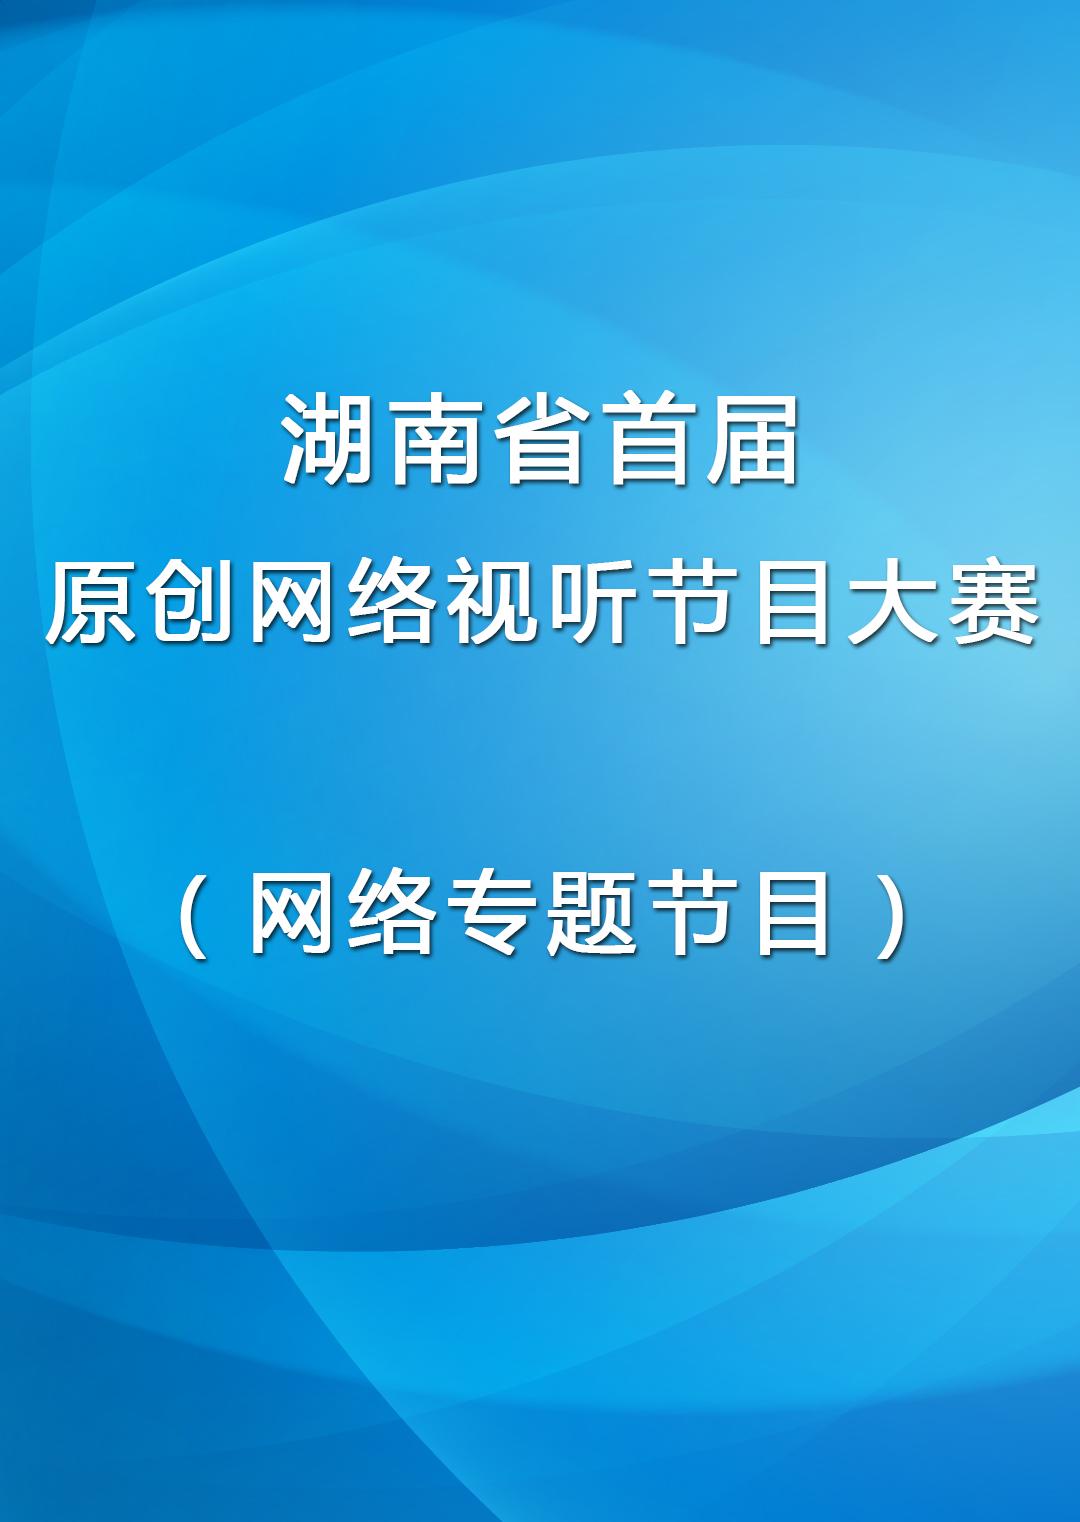 湖南省首届原创网络视听节目大赛网络专题节目